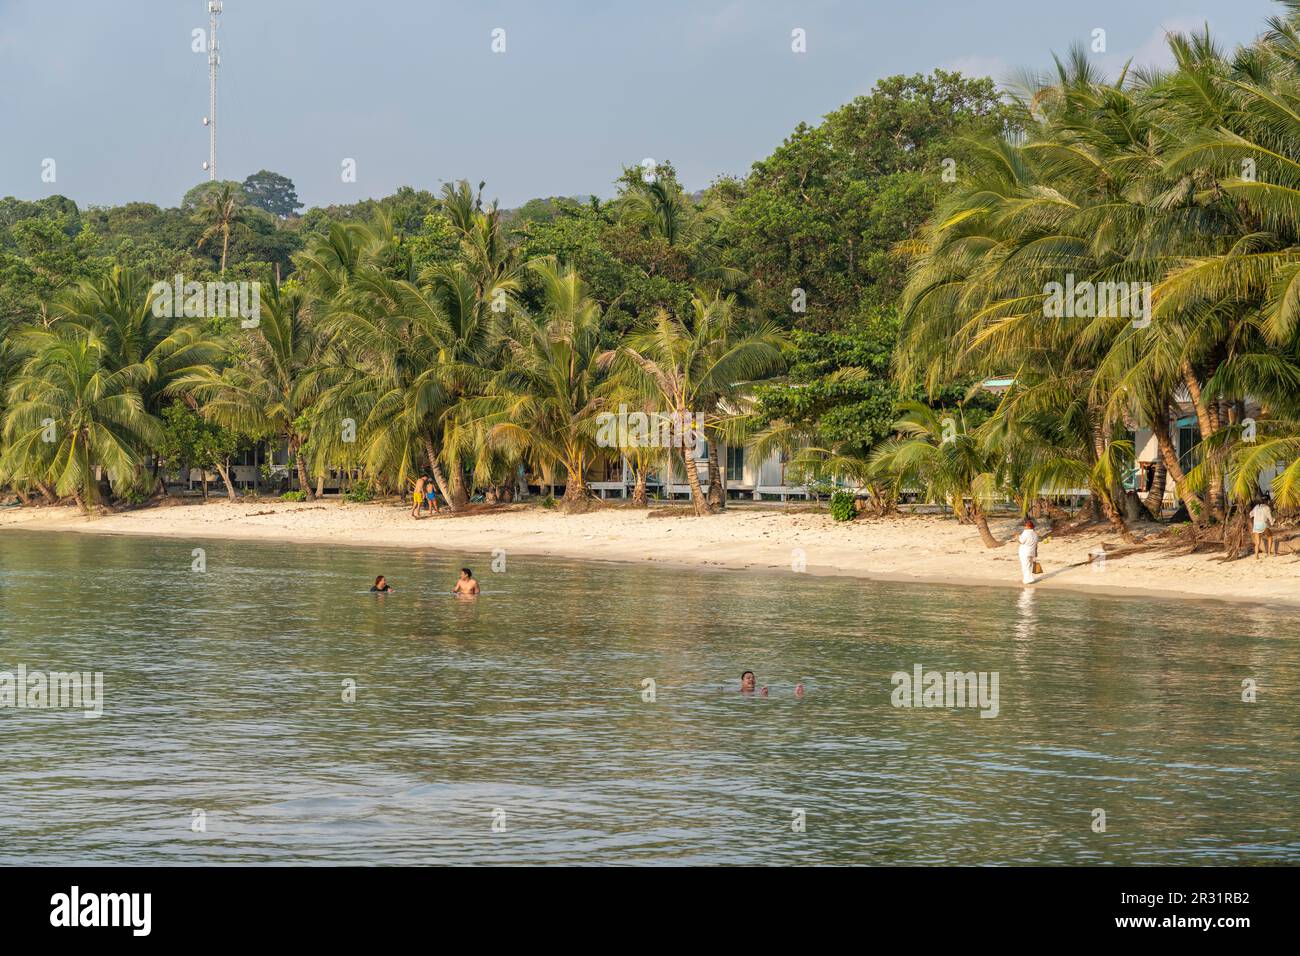 Strand und Bucht von Bang Bao, Insel Ko Kut oder Koh Kood im Golf von Thailand, Asien   |  Bang Bao Beach and bay, Ko Kut or Koh Kood, island in the G Stock Photo